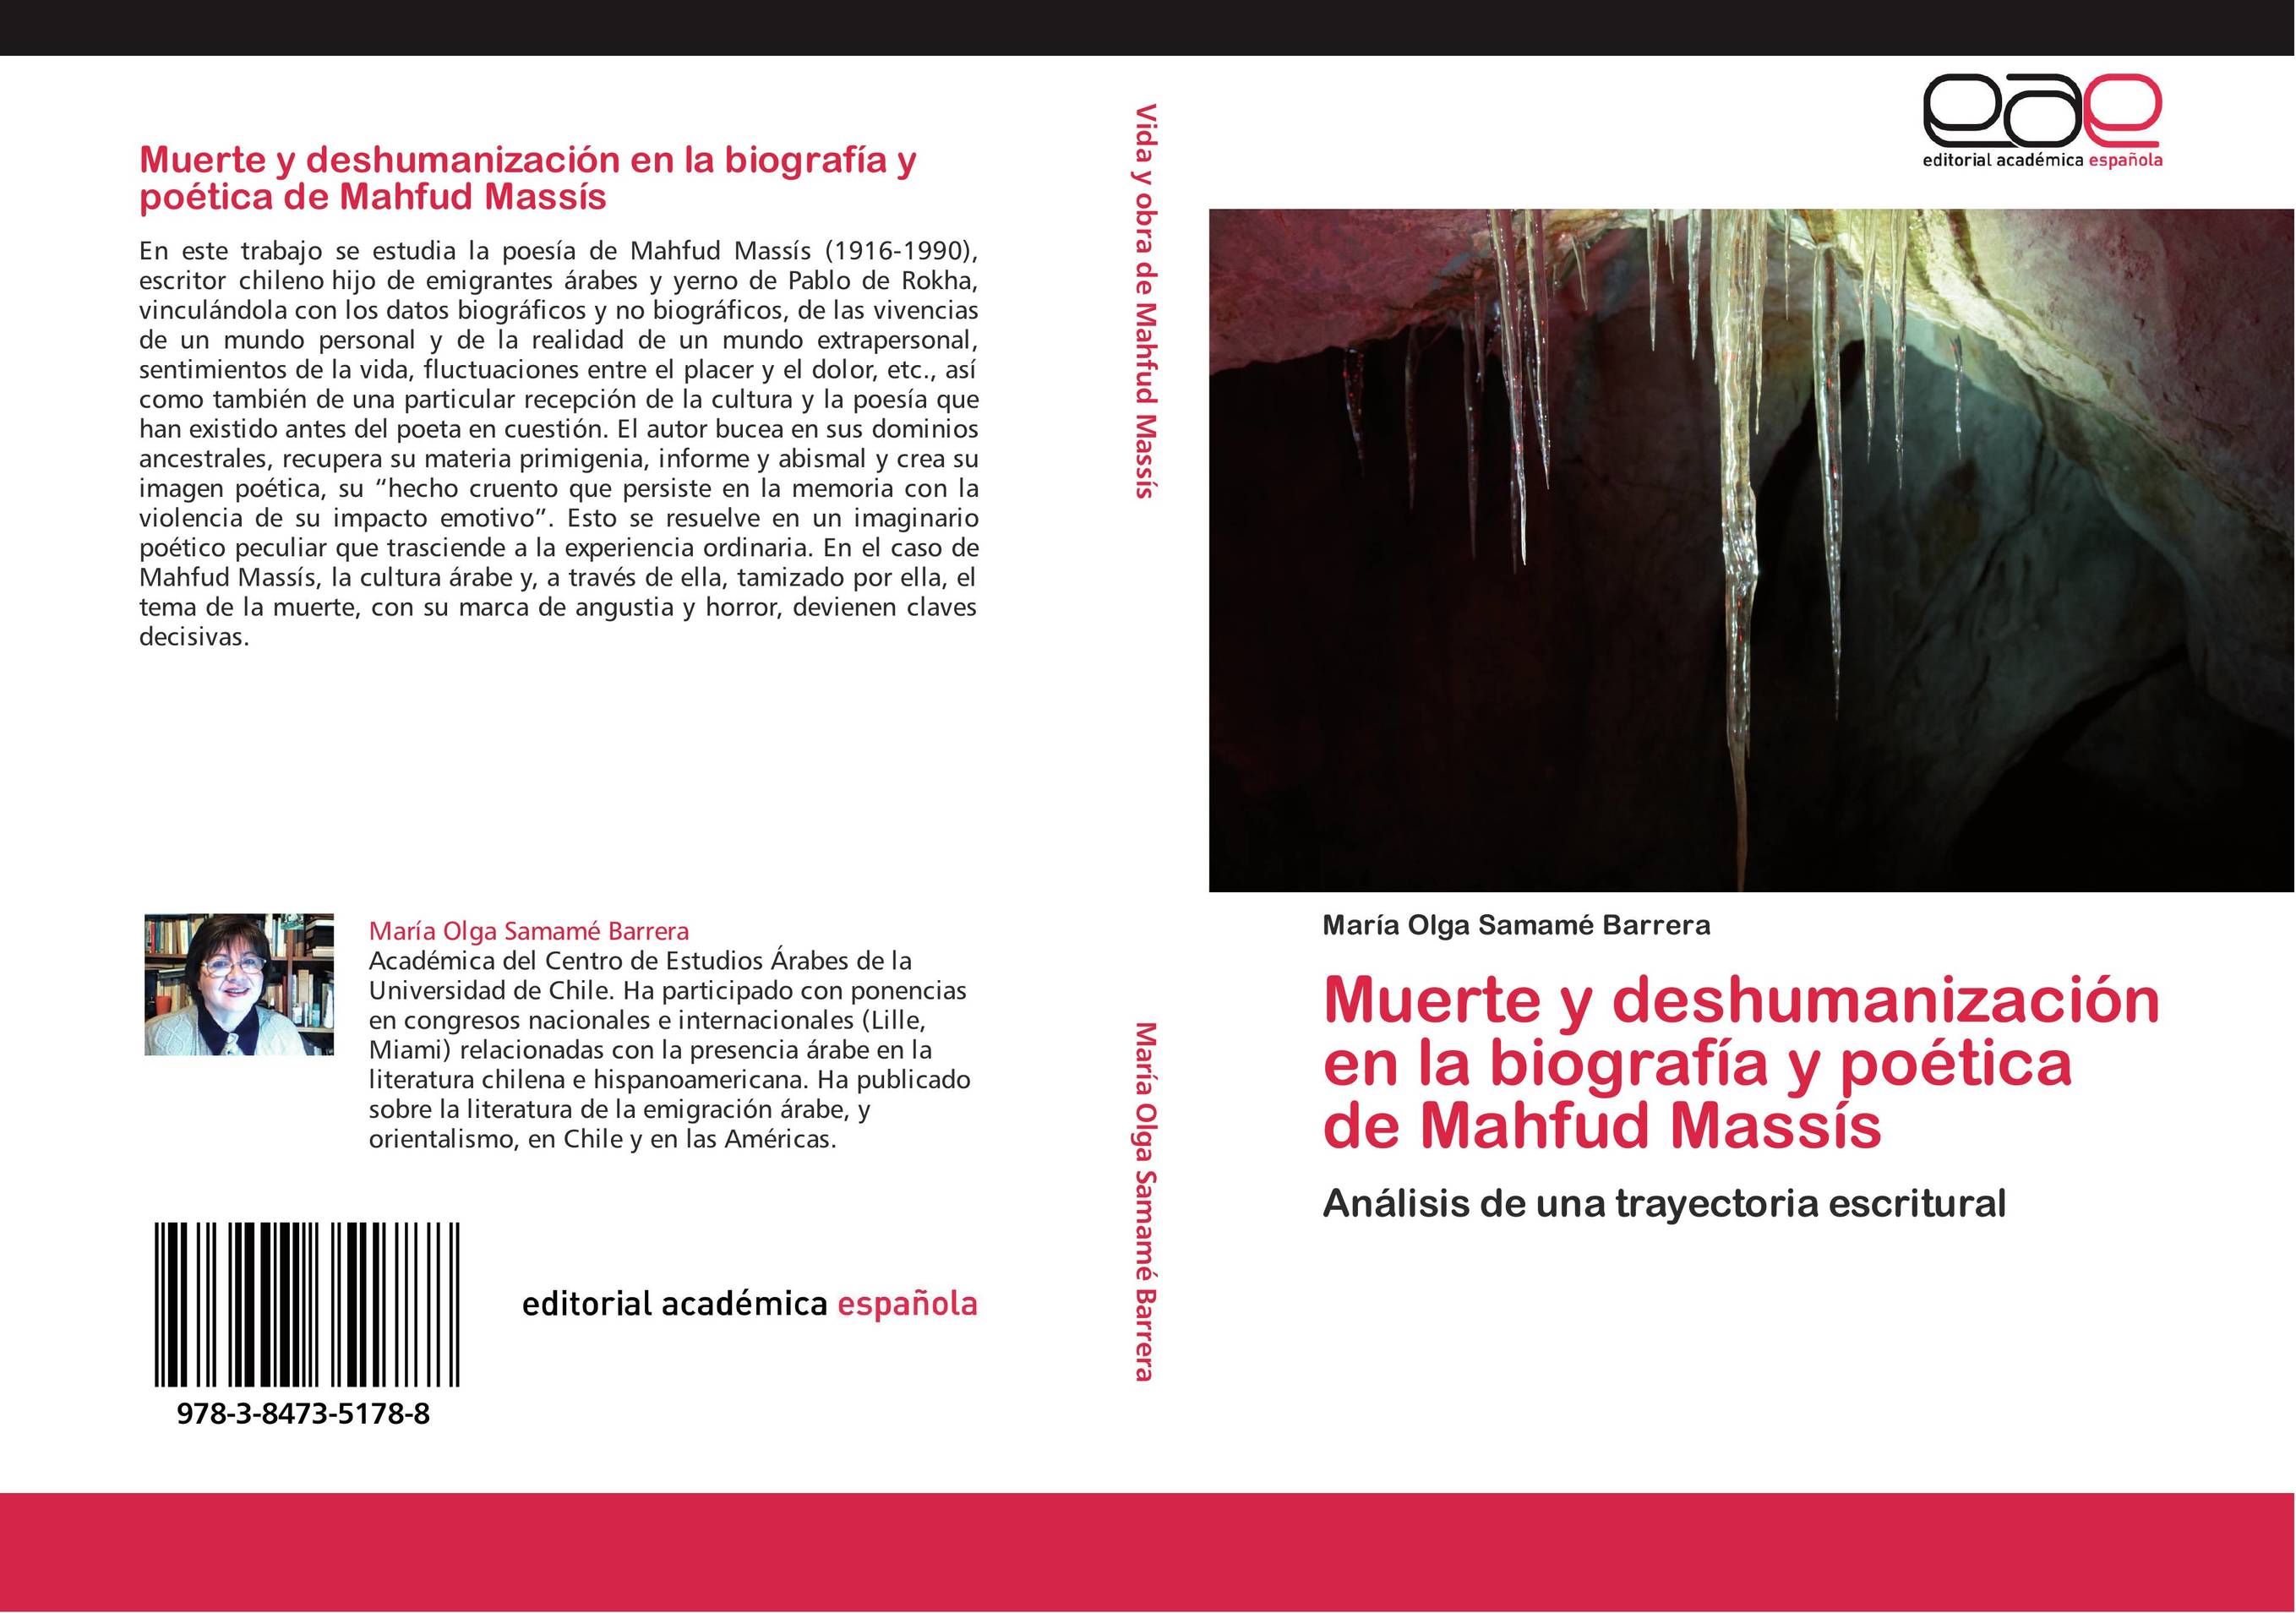 Muerte y deshumanización en la biografía y poética de Mahfud Massís